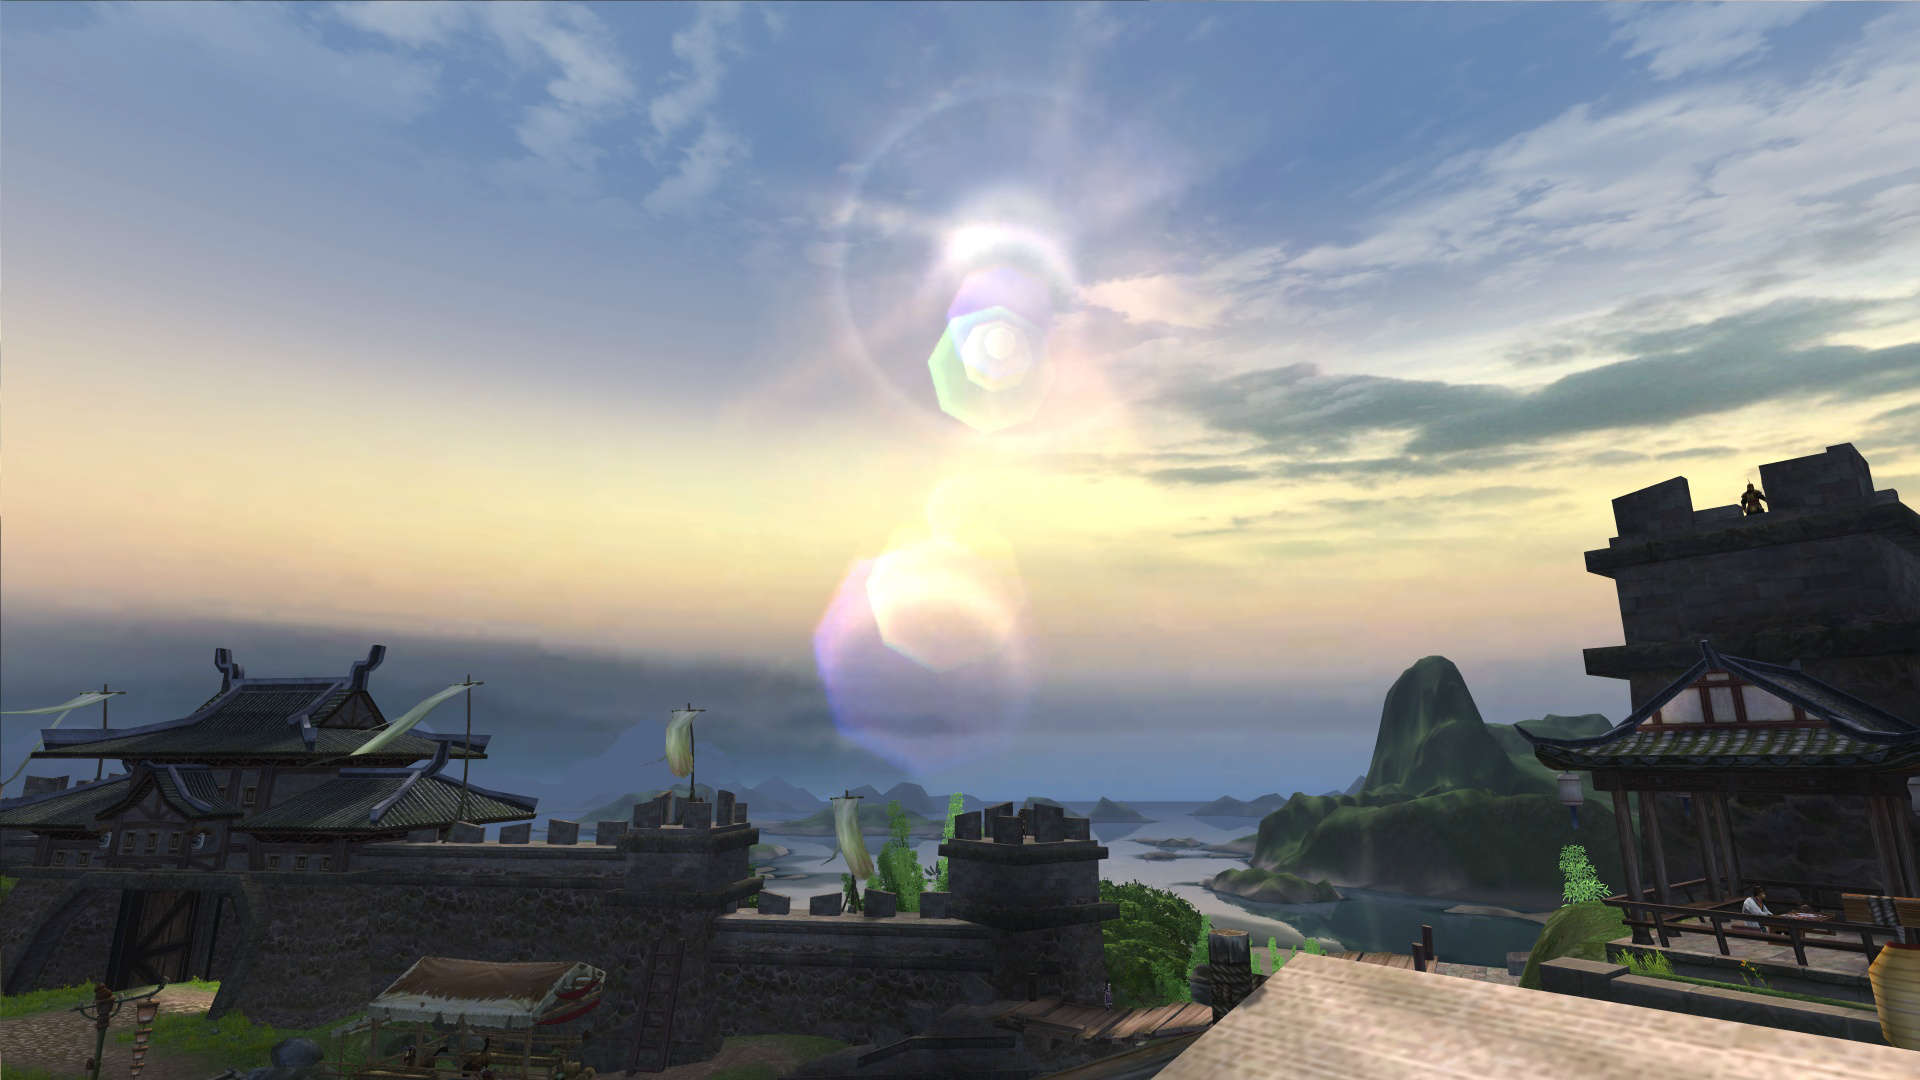 千岛湖的风景在游戏『剑网3』中被展现得淋漓